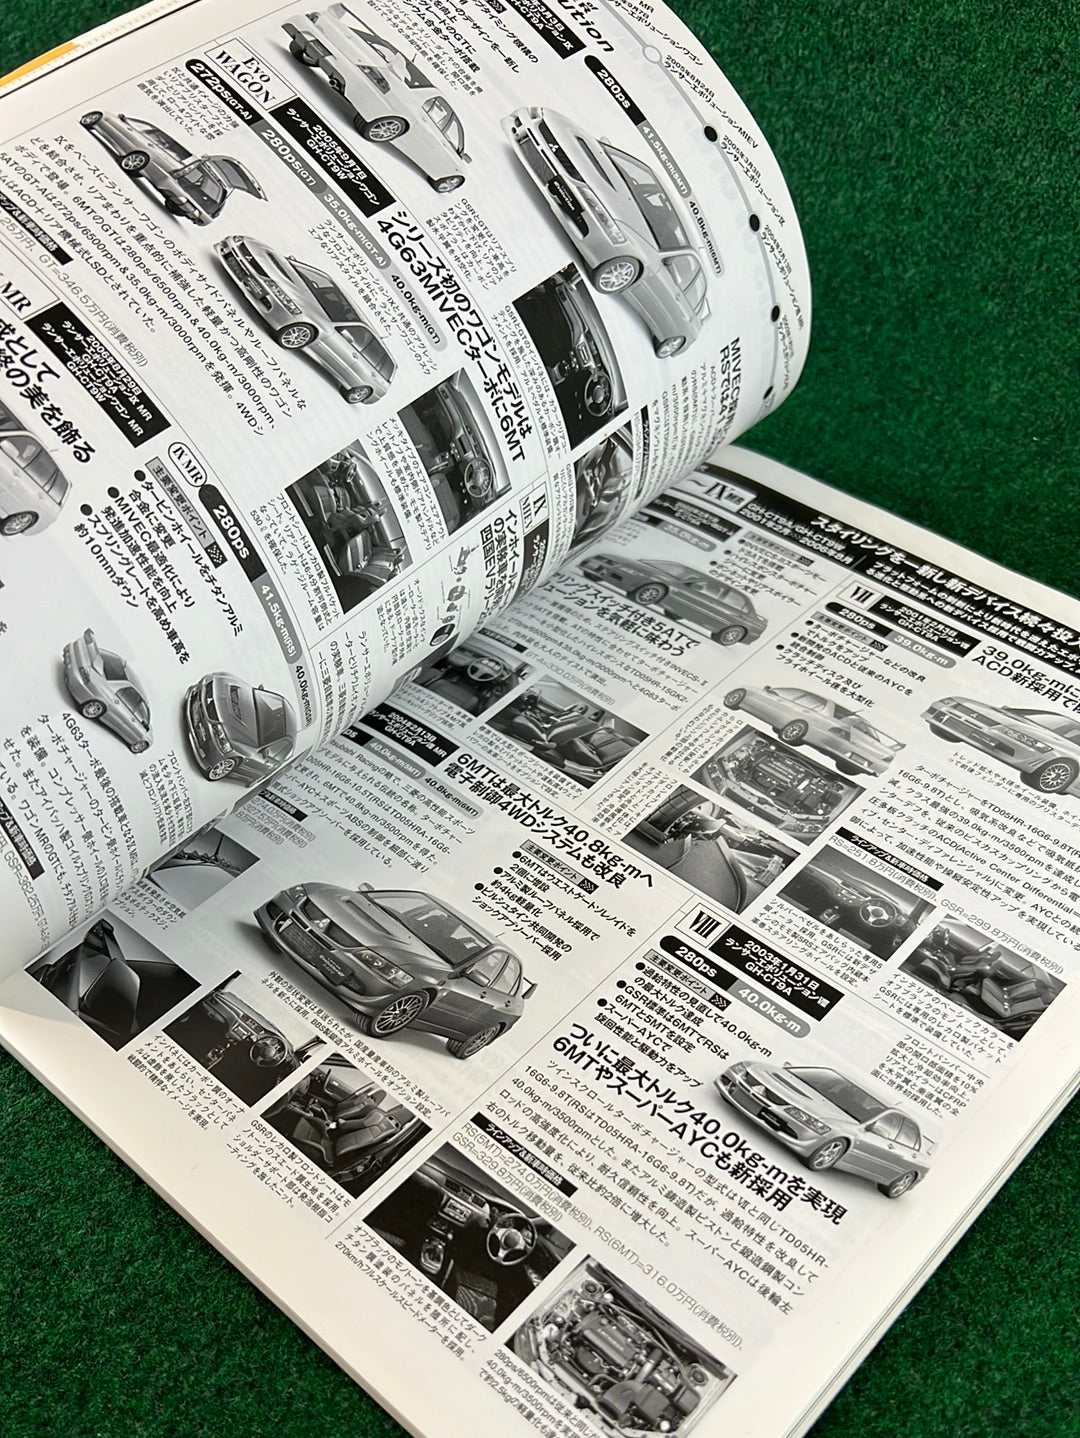 Hyper Rev Magazine - Mitsubishi Lancer Evolution - Vol. 117